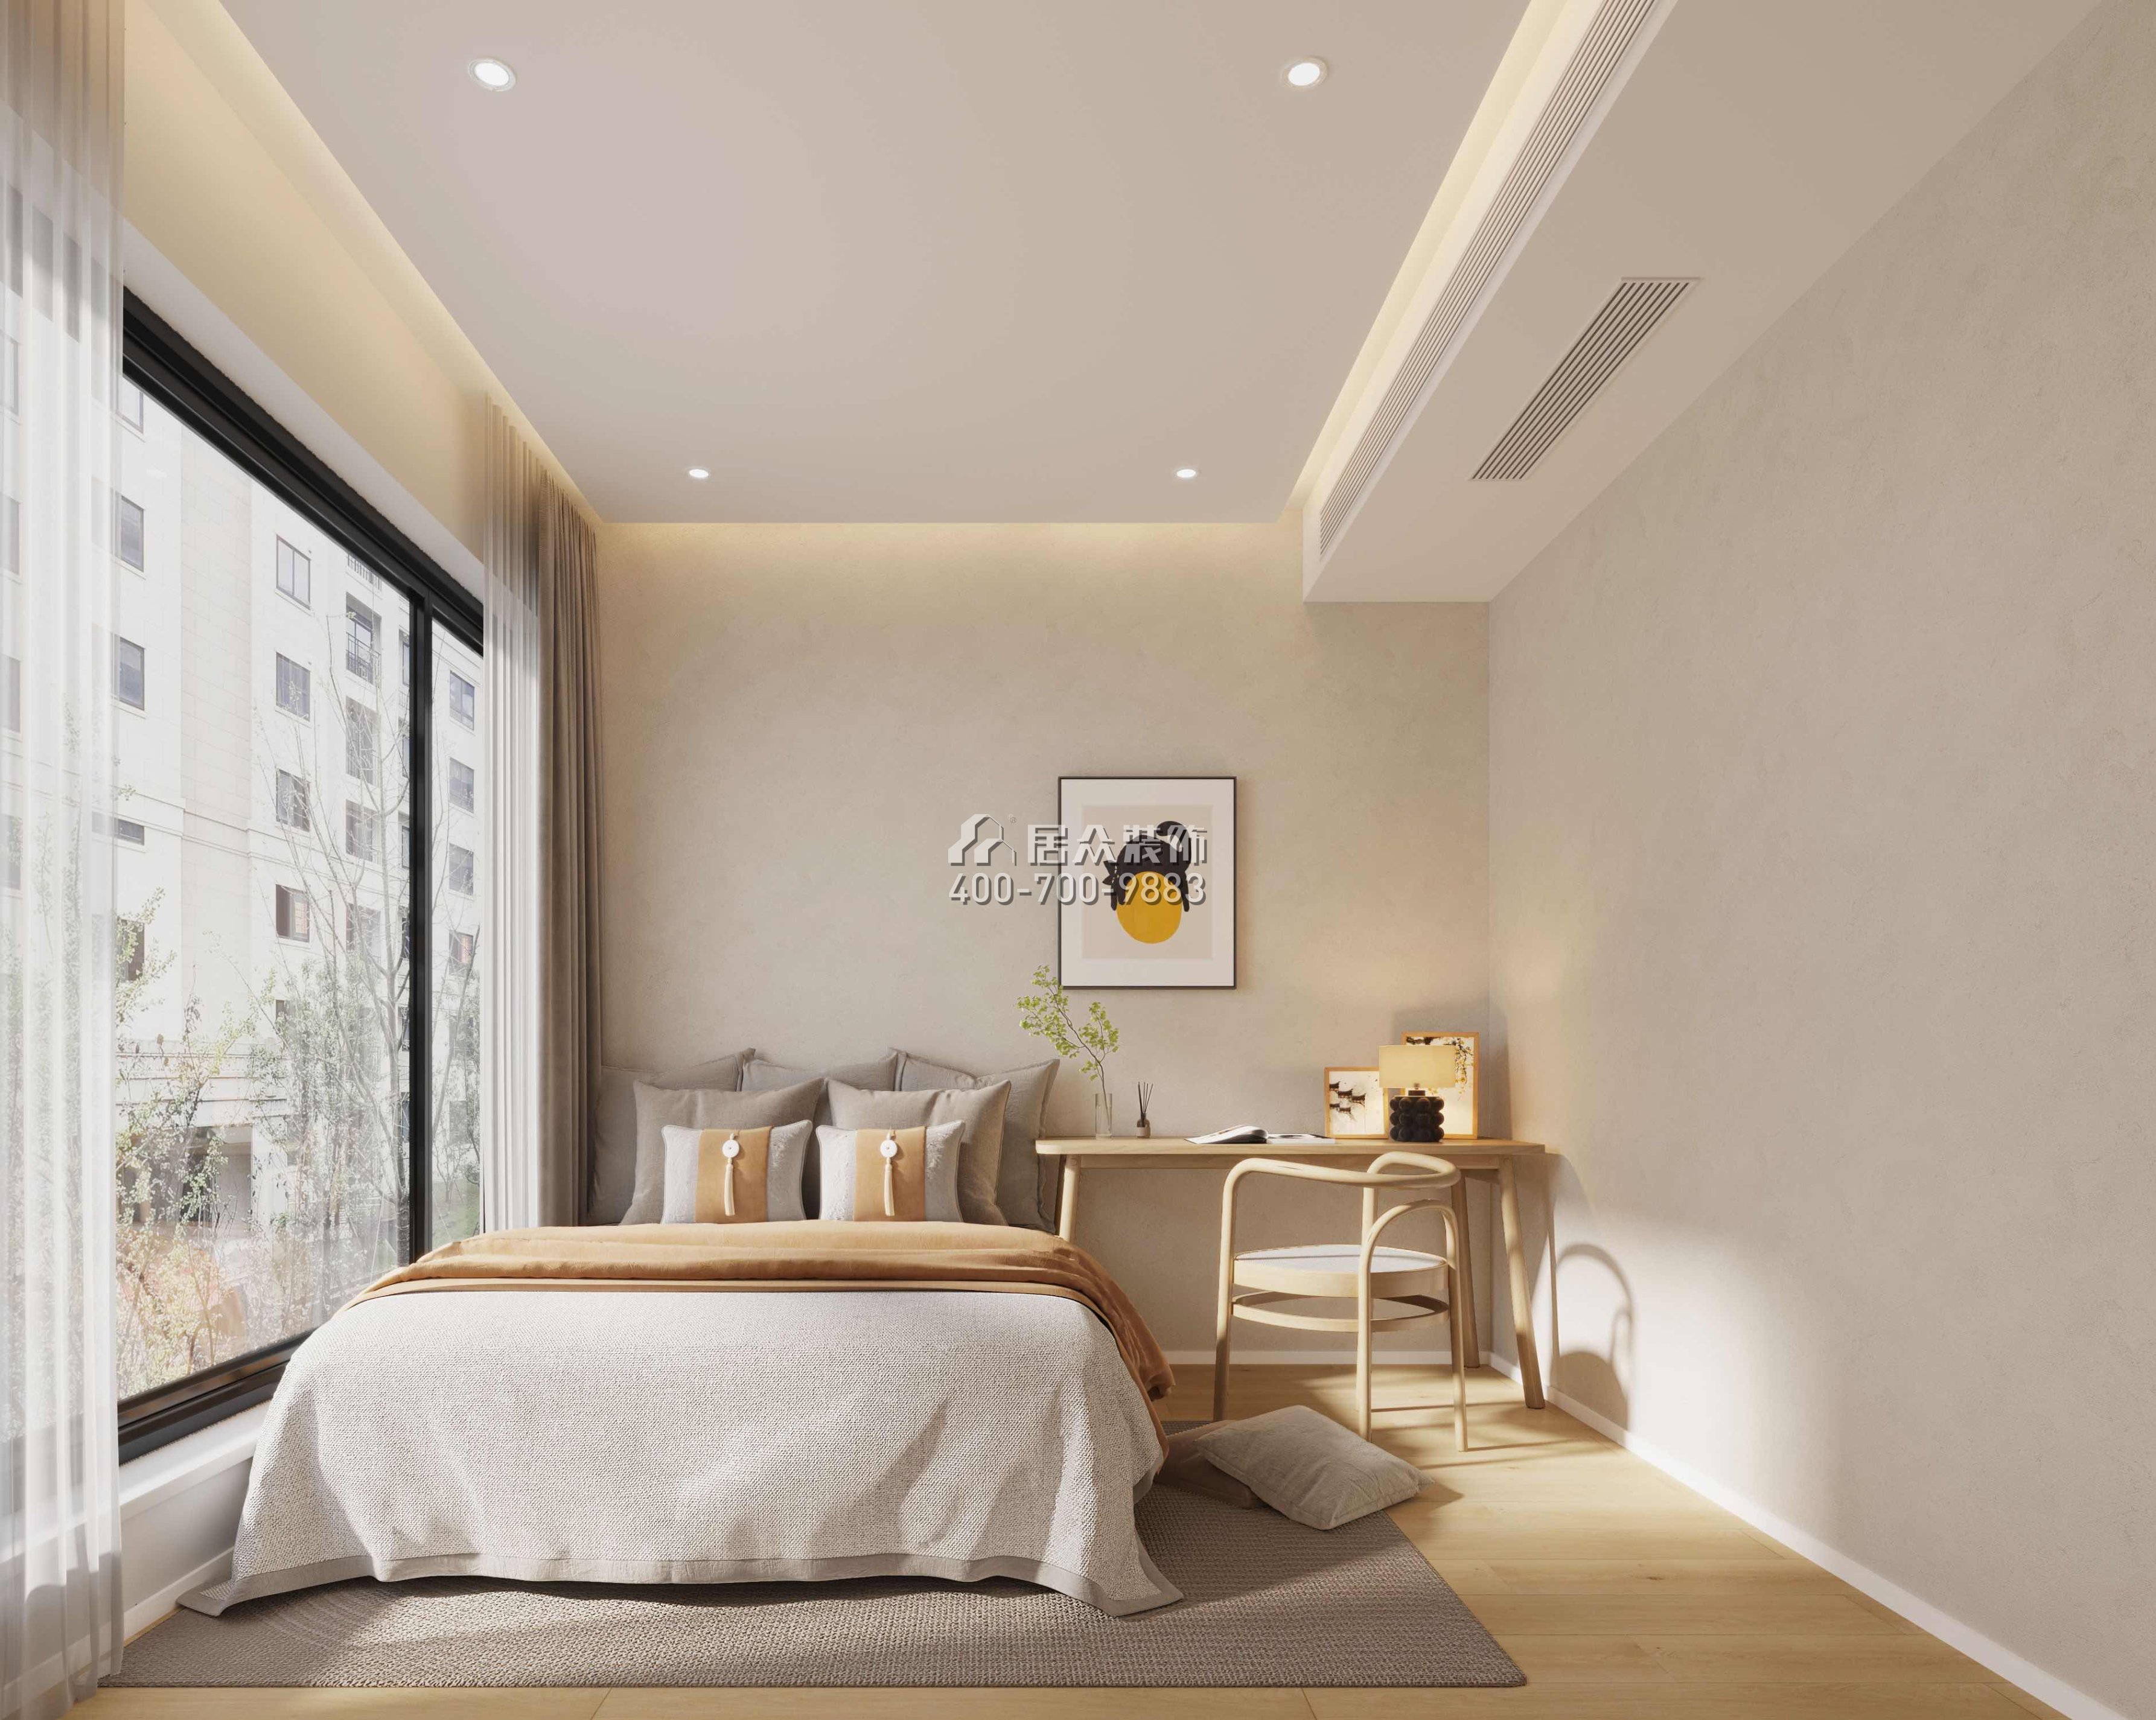 天健天骄南苑123平方米现代简约风格平层户型卧室装修效果图